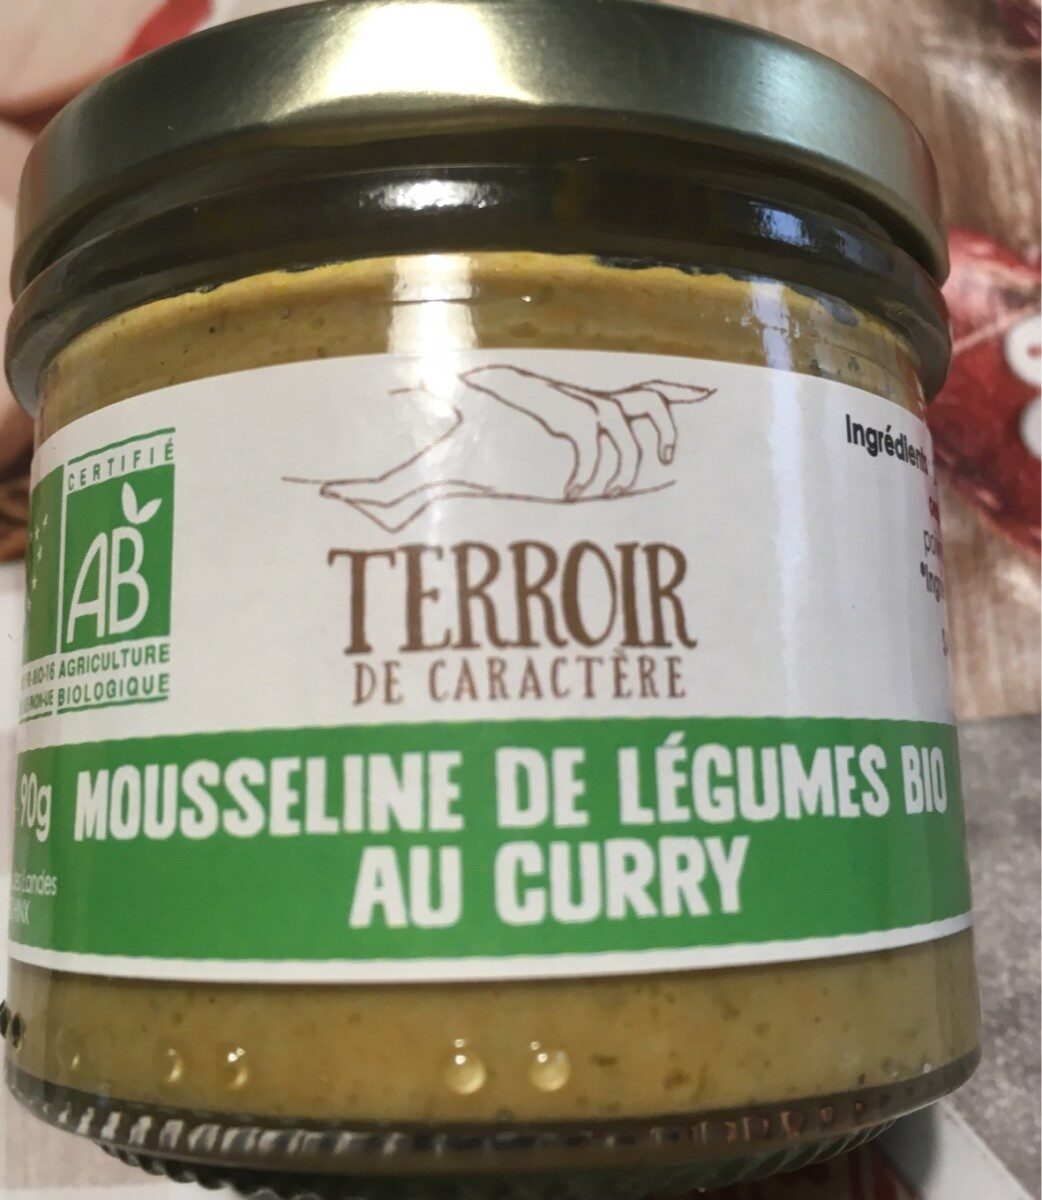 Mousseline de legumes bio au curry - Product - fr